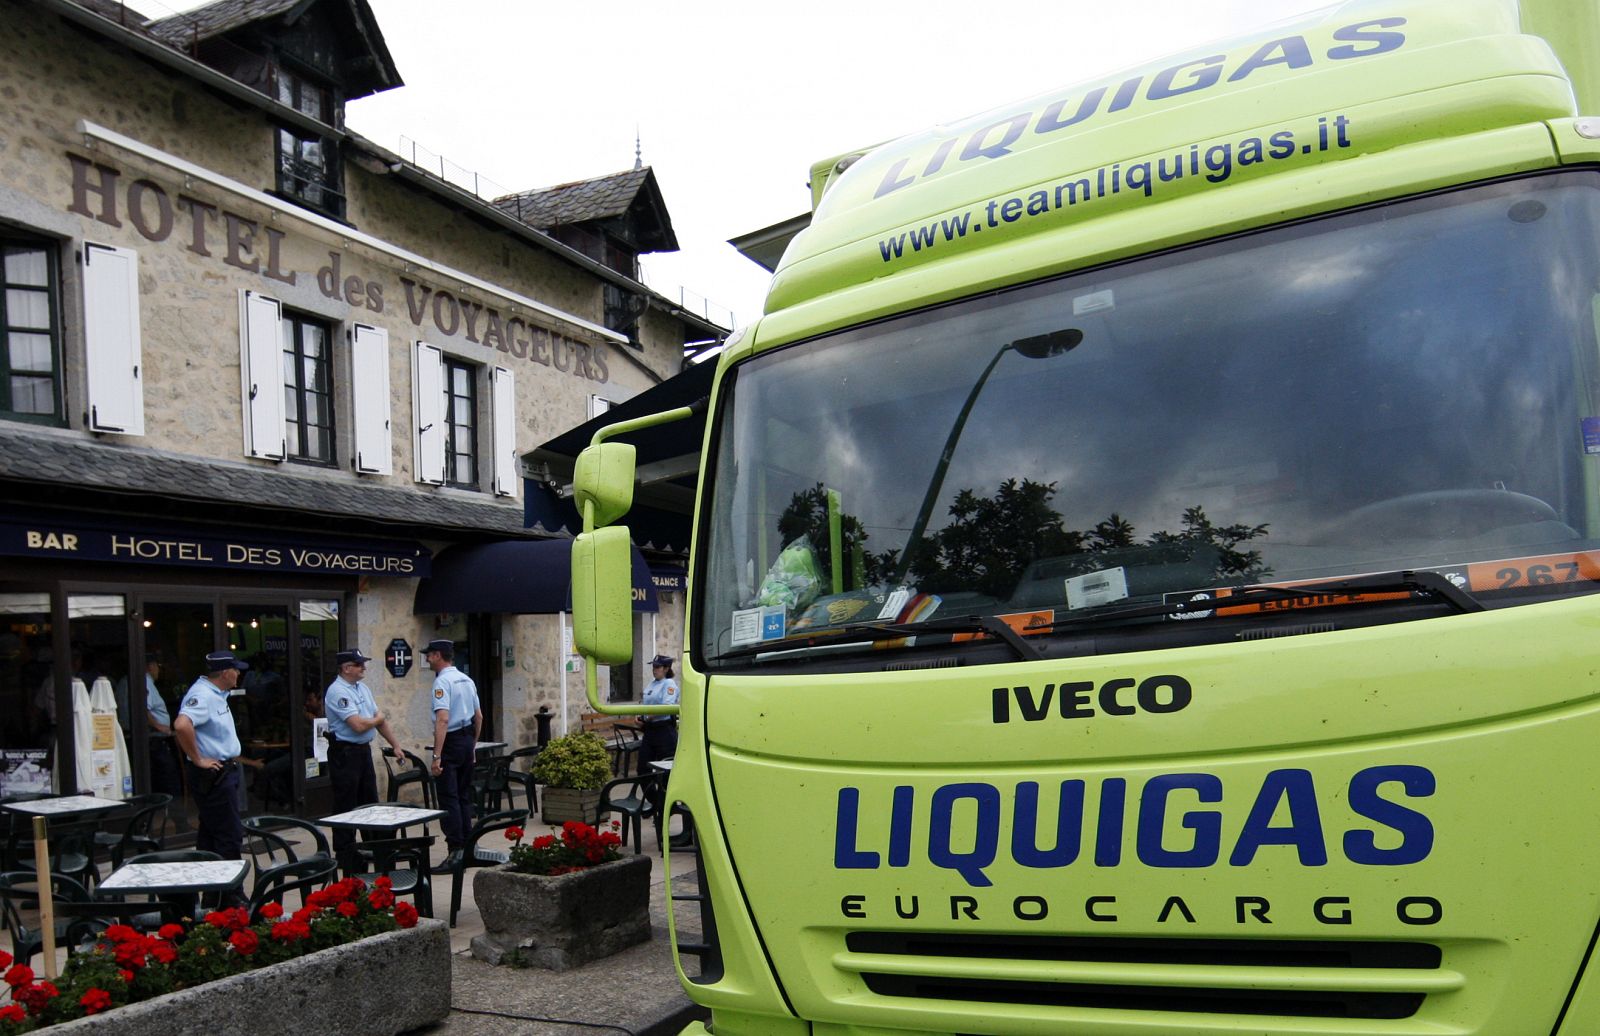 Agentes de la policía esperan delante de la puerta del hotel donde se aloja el equipo Liquigas, después de que se conociera que el español Manuel Beltrán diera positivo por EPO en la primera etapa del Tour de Francia.